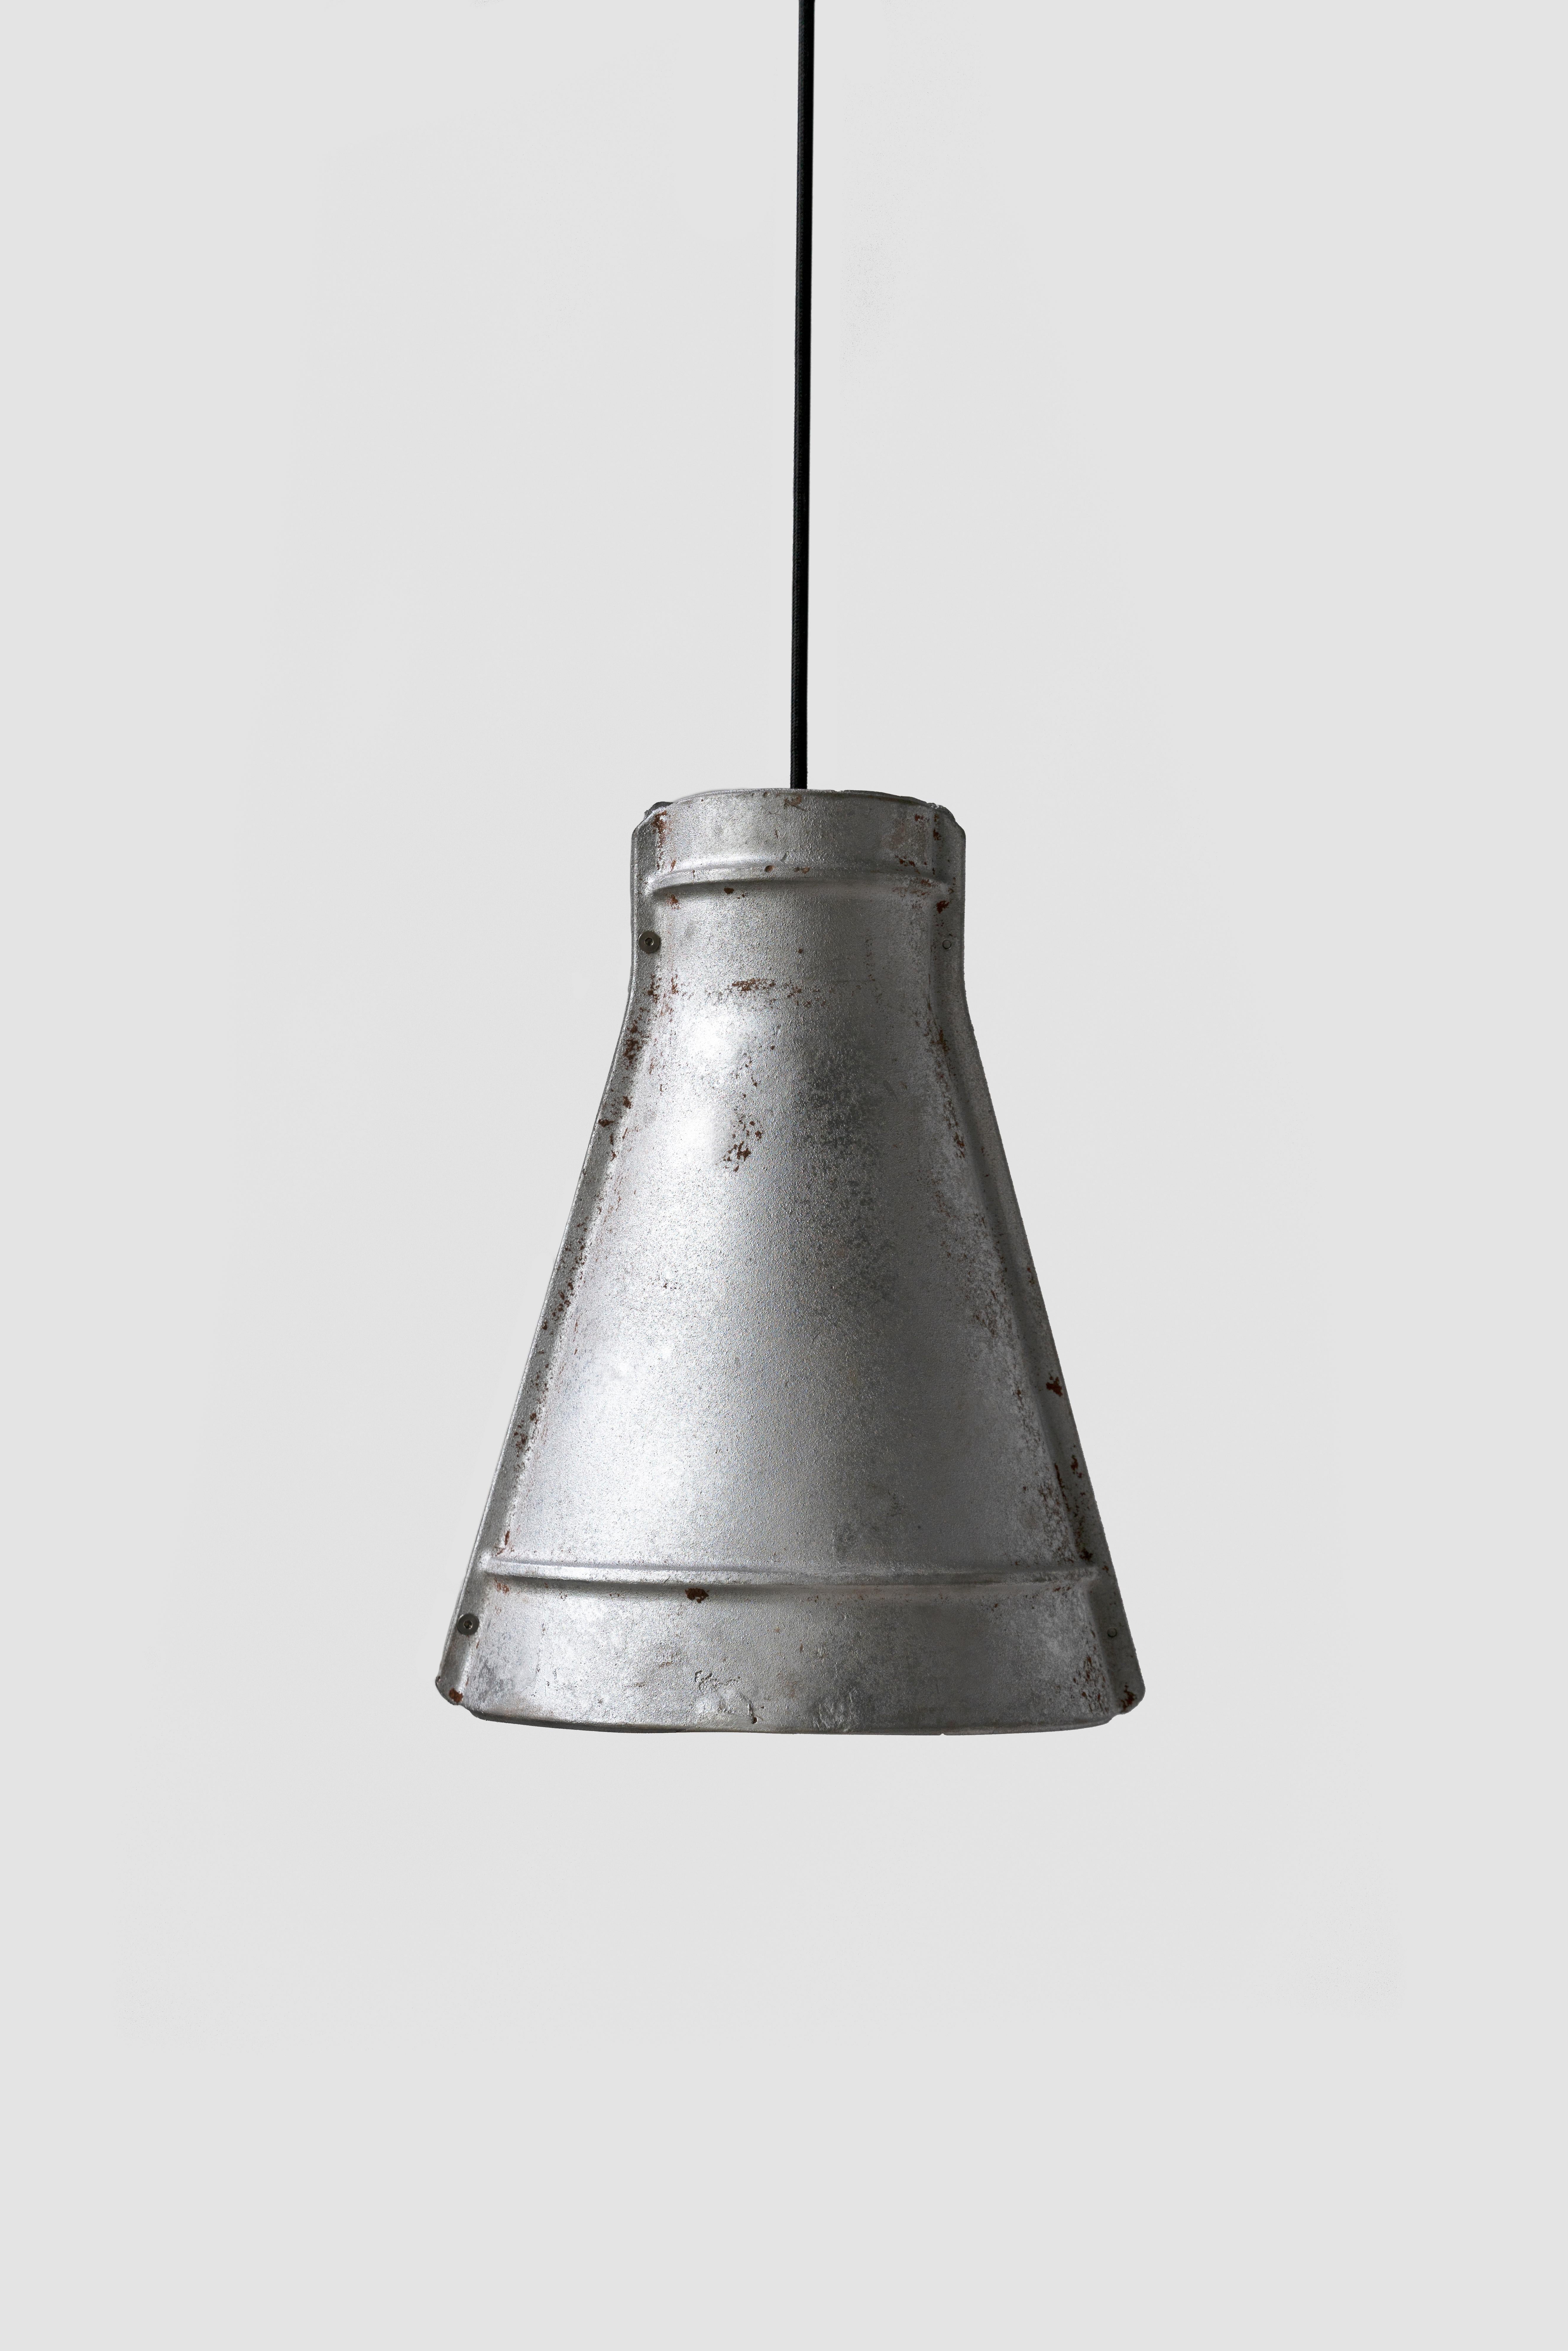 Contemporary Industrial Pendant Lamp 'Zero' in Aluminum 'Medium' For Sale 2